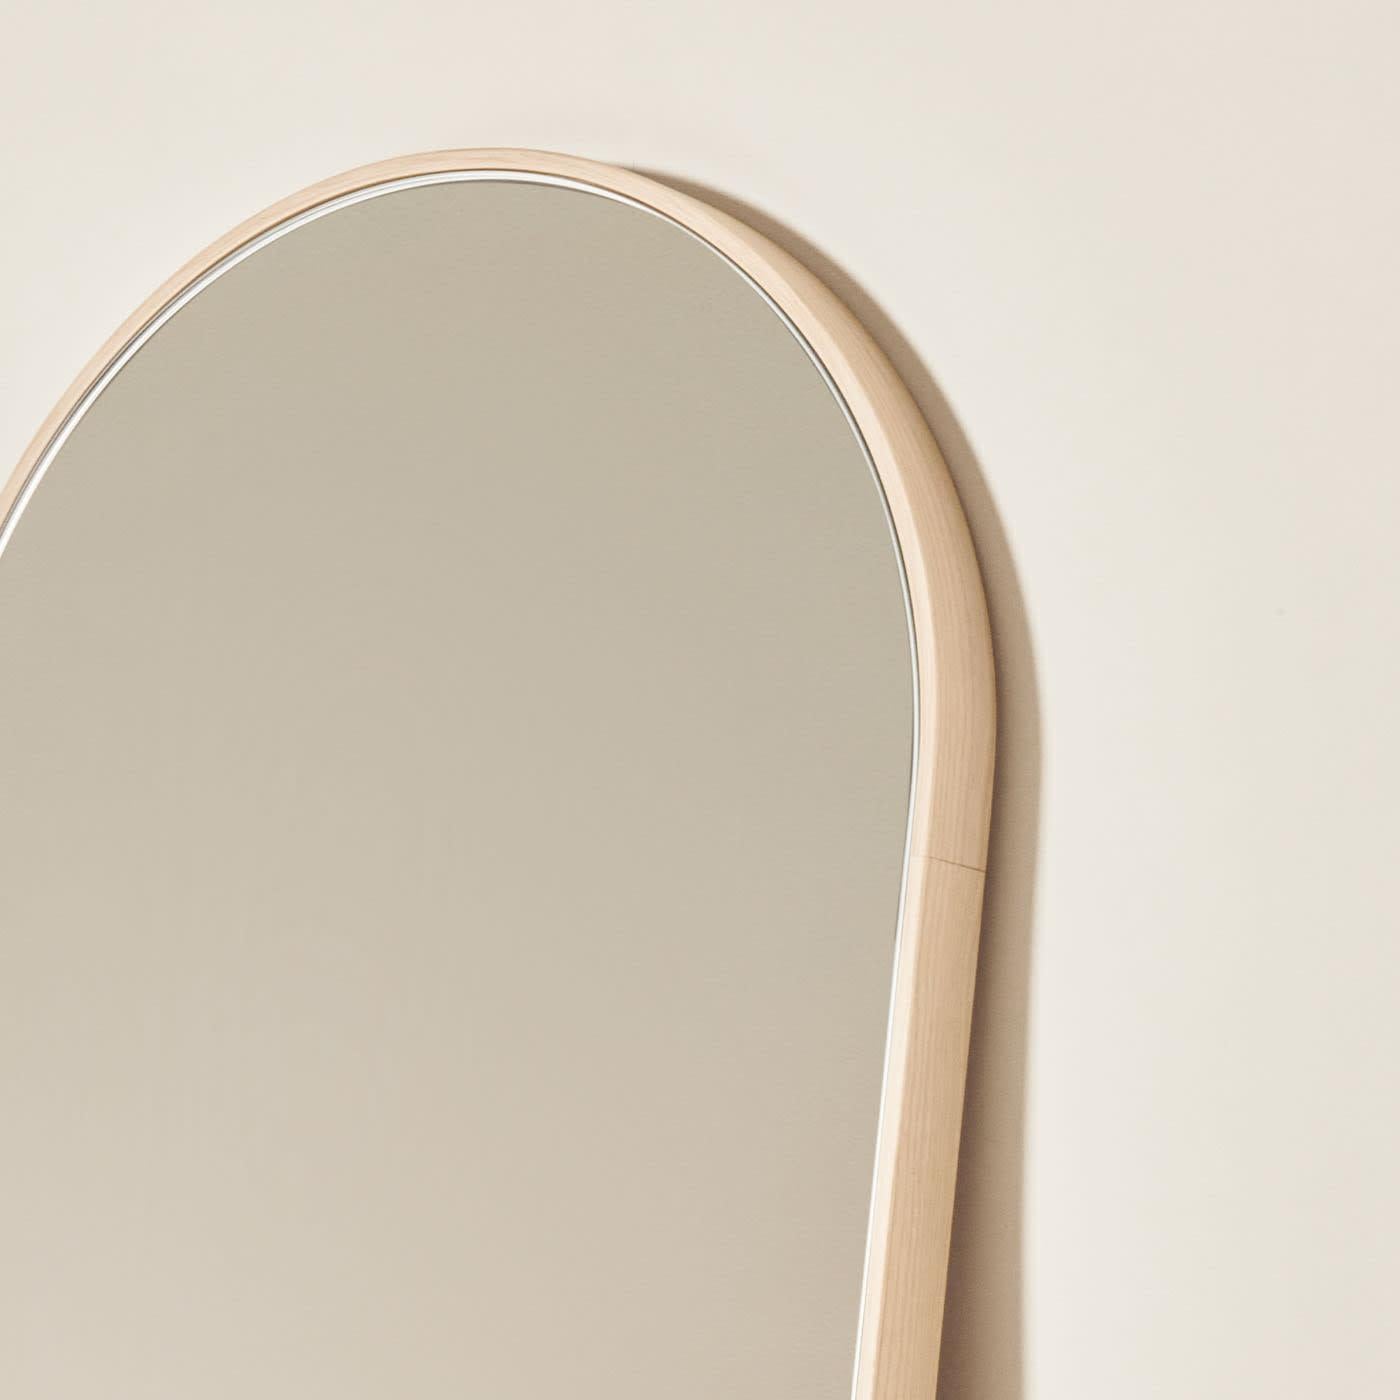 Les miroirs Tutto Sesto font partie de la collection 2023 de meubles contemporains en bois massif. Née du dialogue entre Dale Italia et Cono Studio, la gamme se définit par une esthétique essentielle, en phase avec les tendances actuelles sans